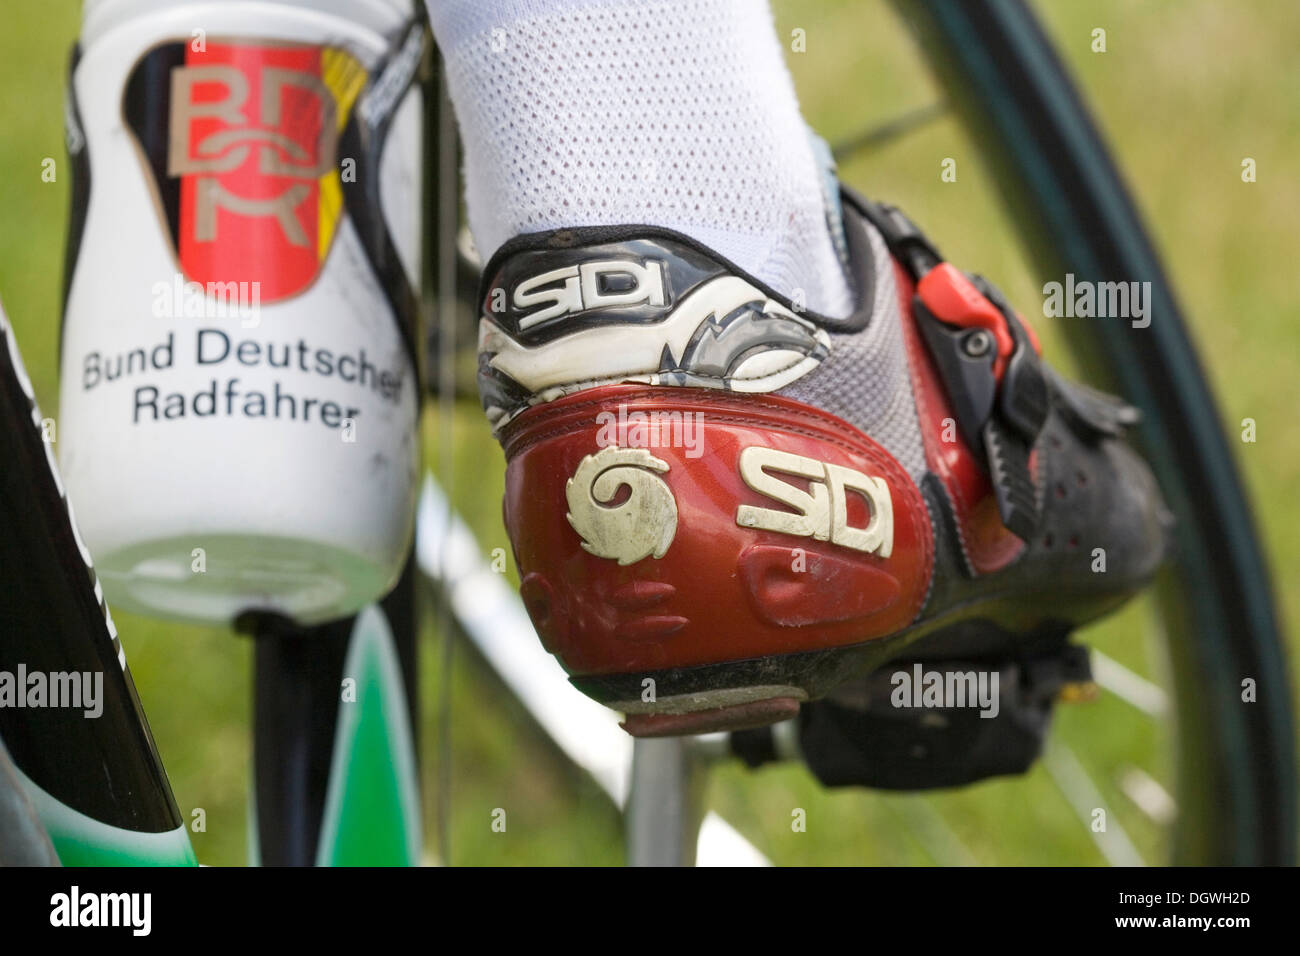 Rechten Fuß der Radrennfahrer auf ein Pedal, Getränke-Flasche mit dem Logo des BDR, Bund Deutscher prominente Stockfoto